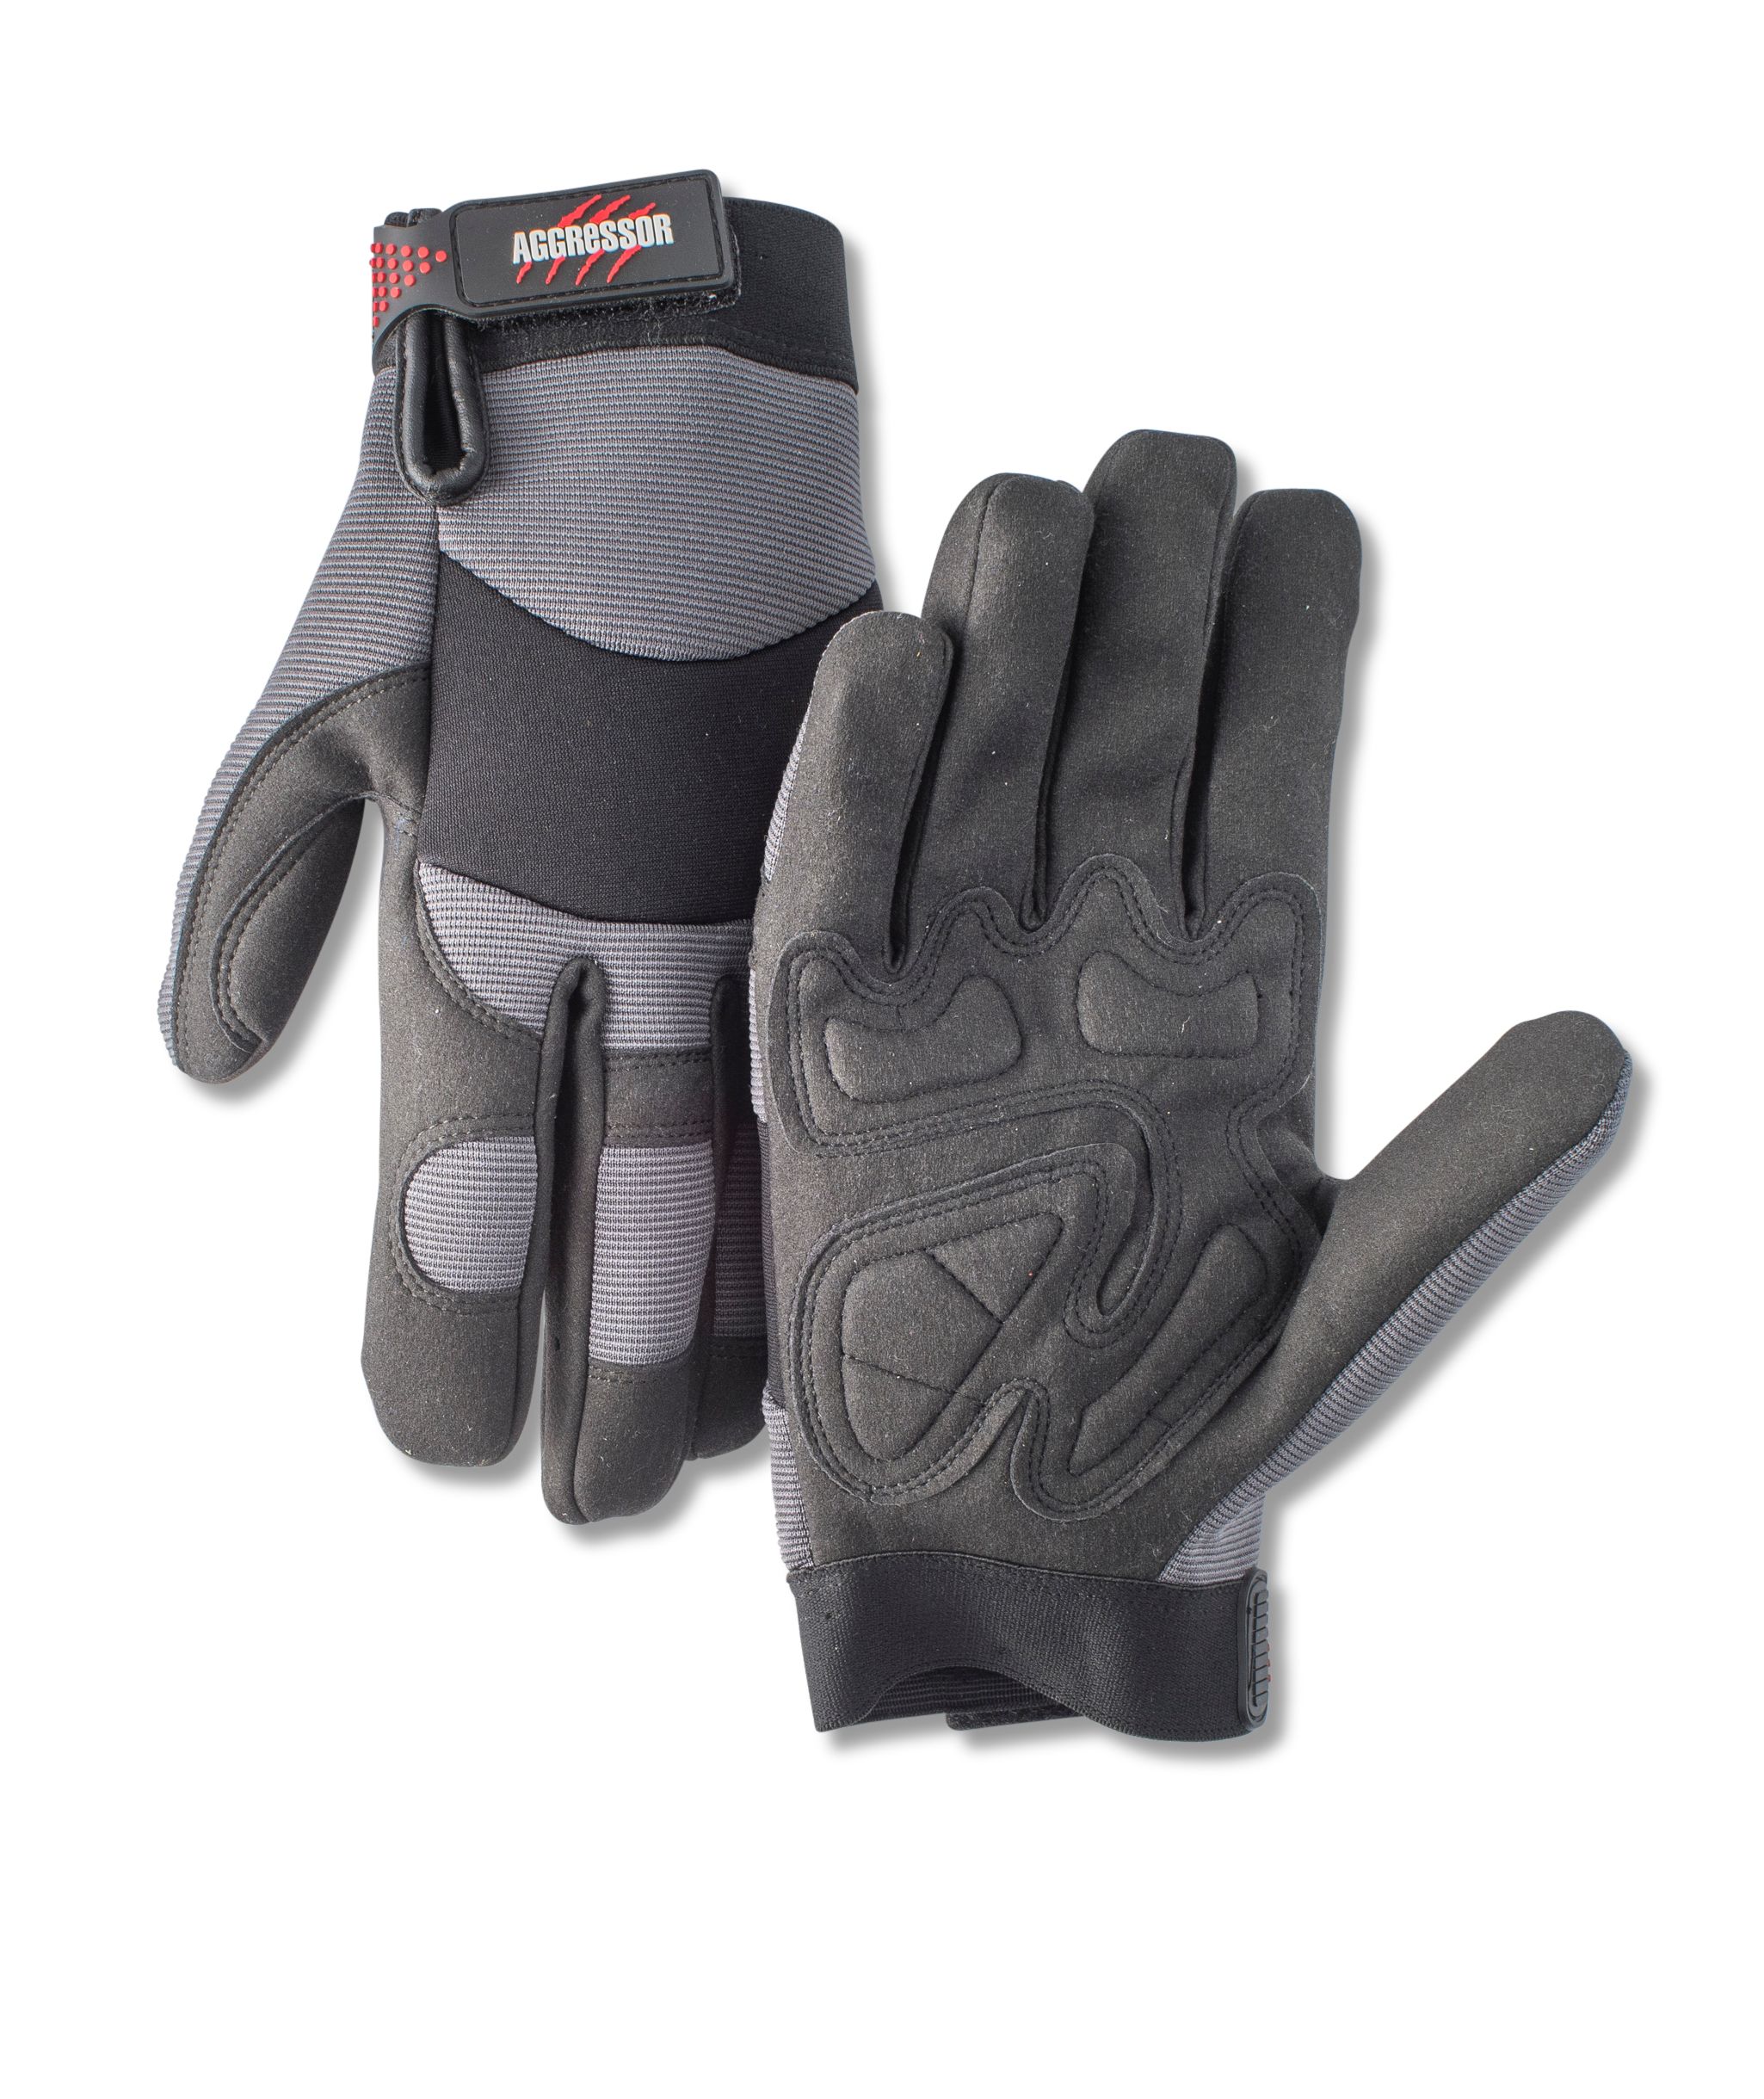 Aggressor Precision Fit Gloves